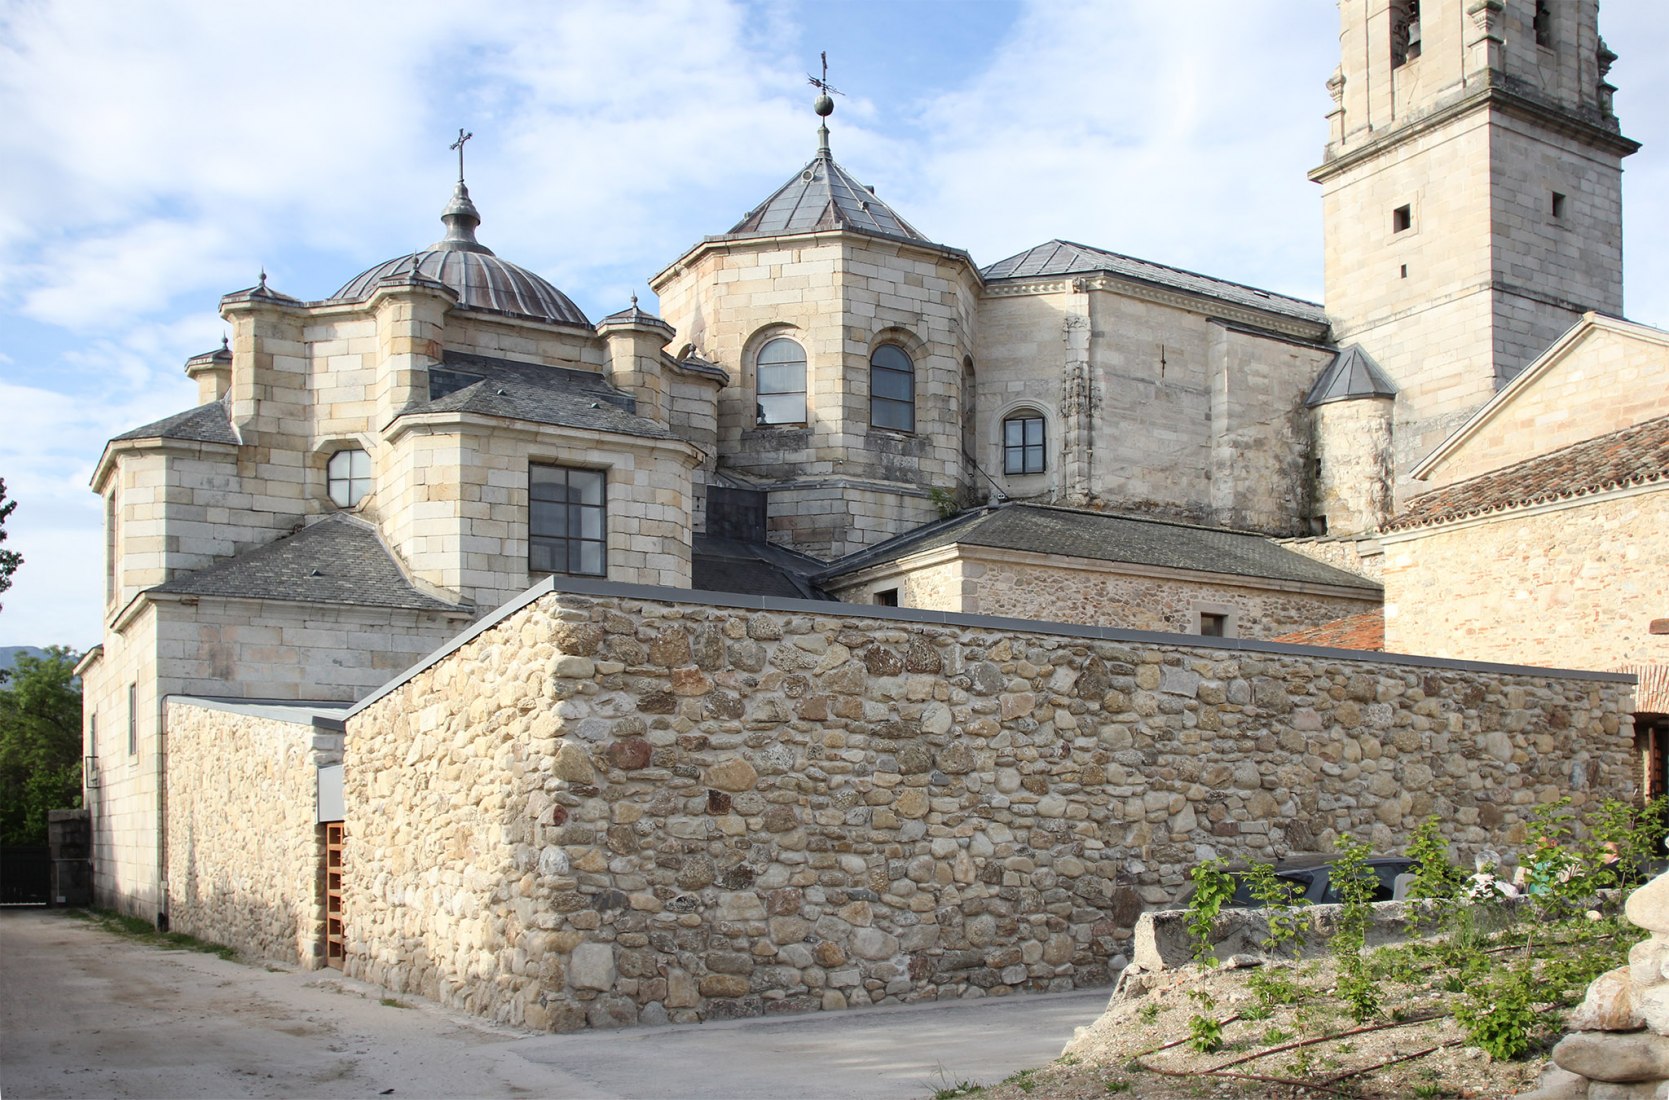 Recuperación de la cilla y jardienes del Monasterio de Santa María de El Paular, por bab arquitectos.